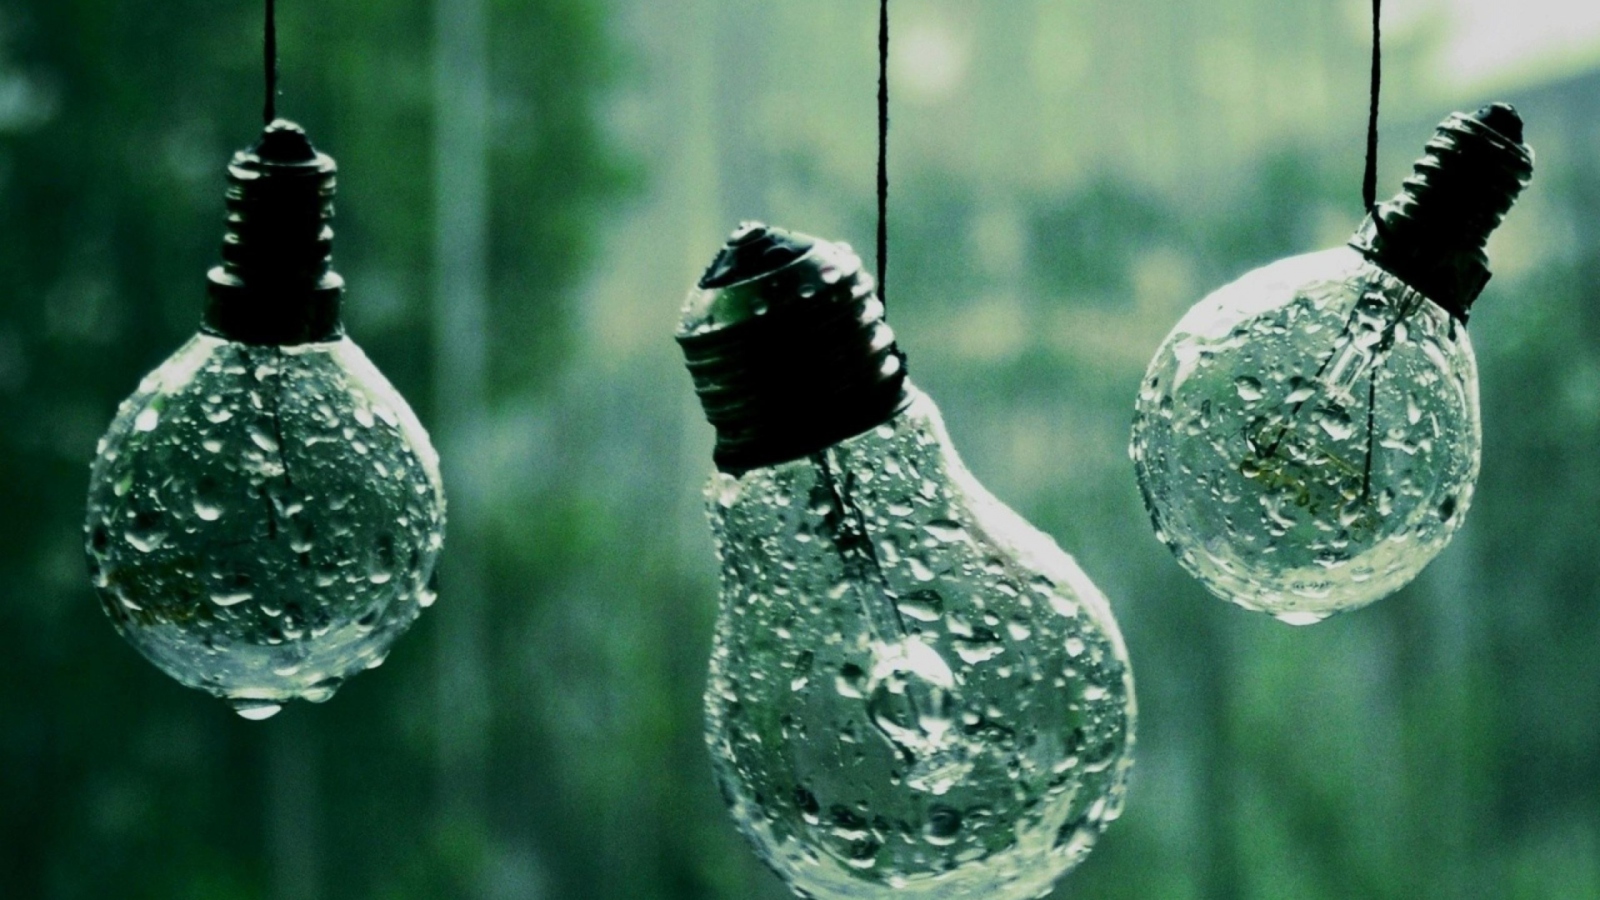 Обои Light Bulbs And Water Drops 1600x900